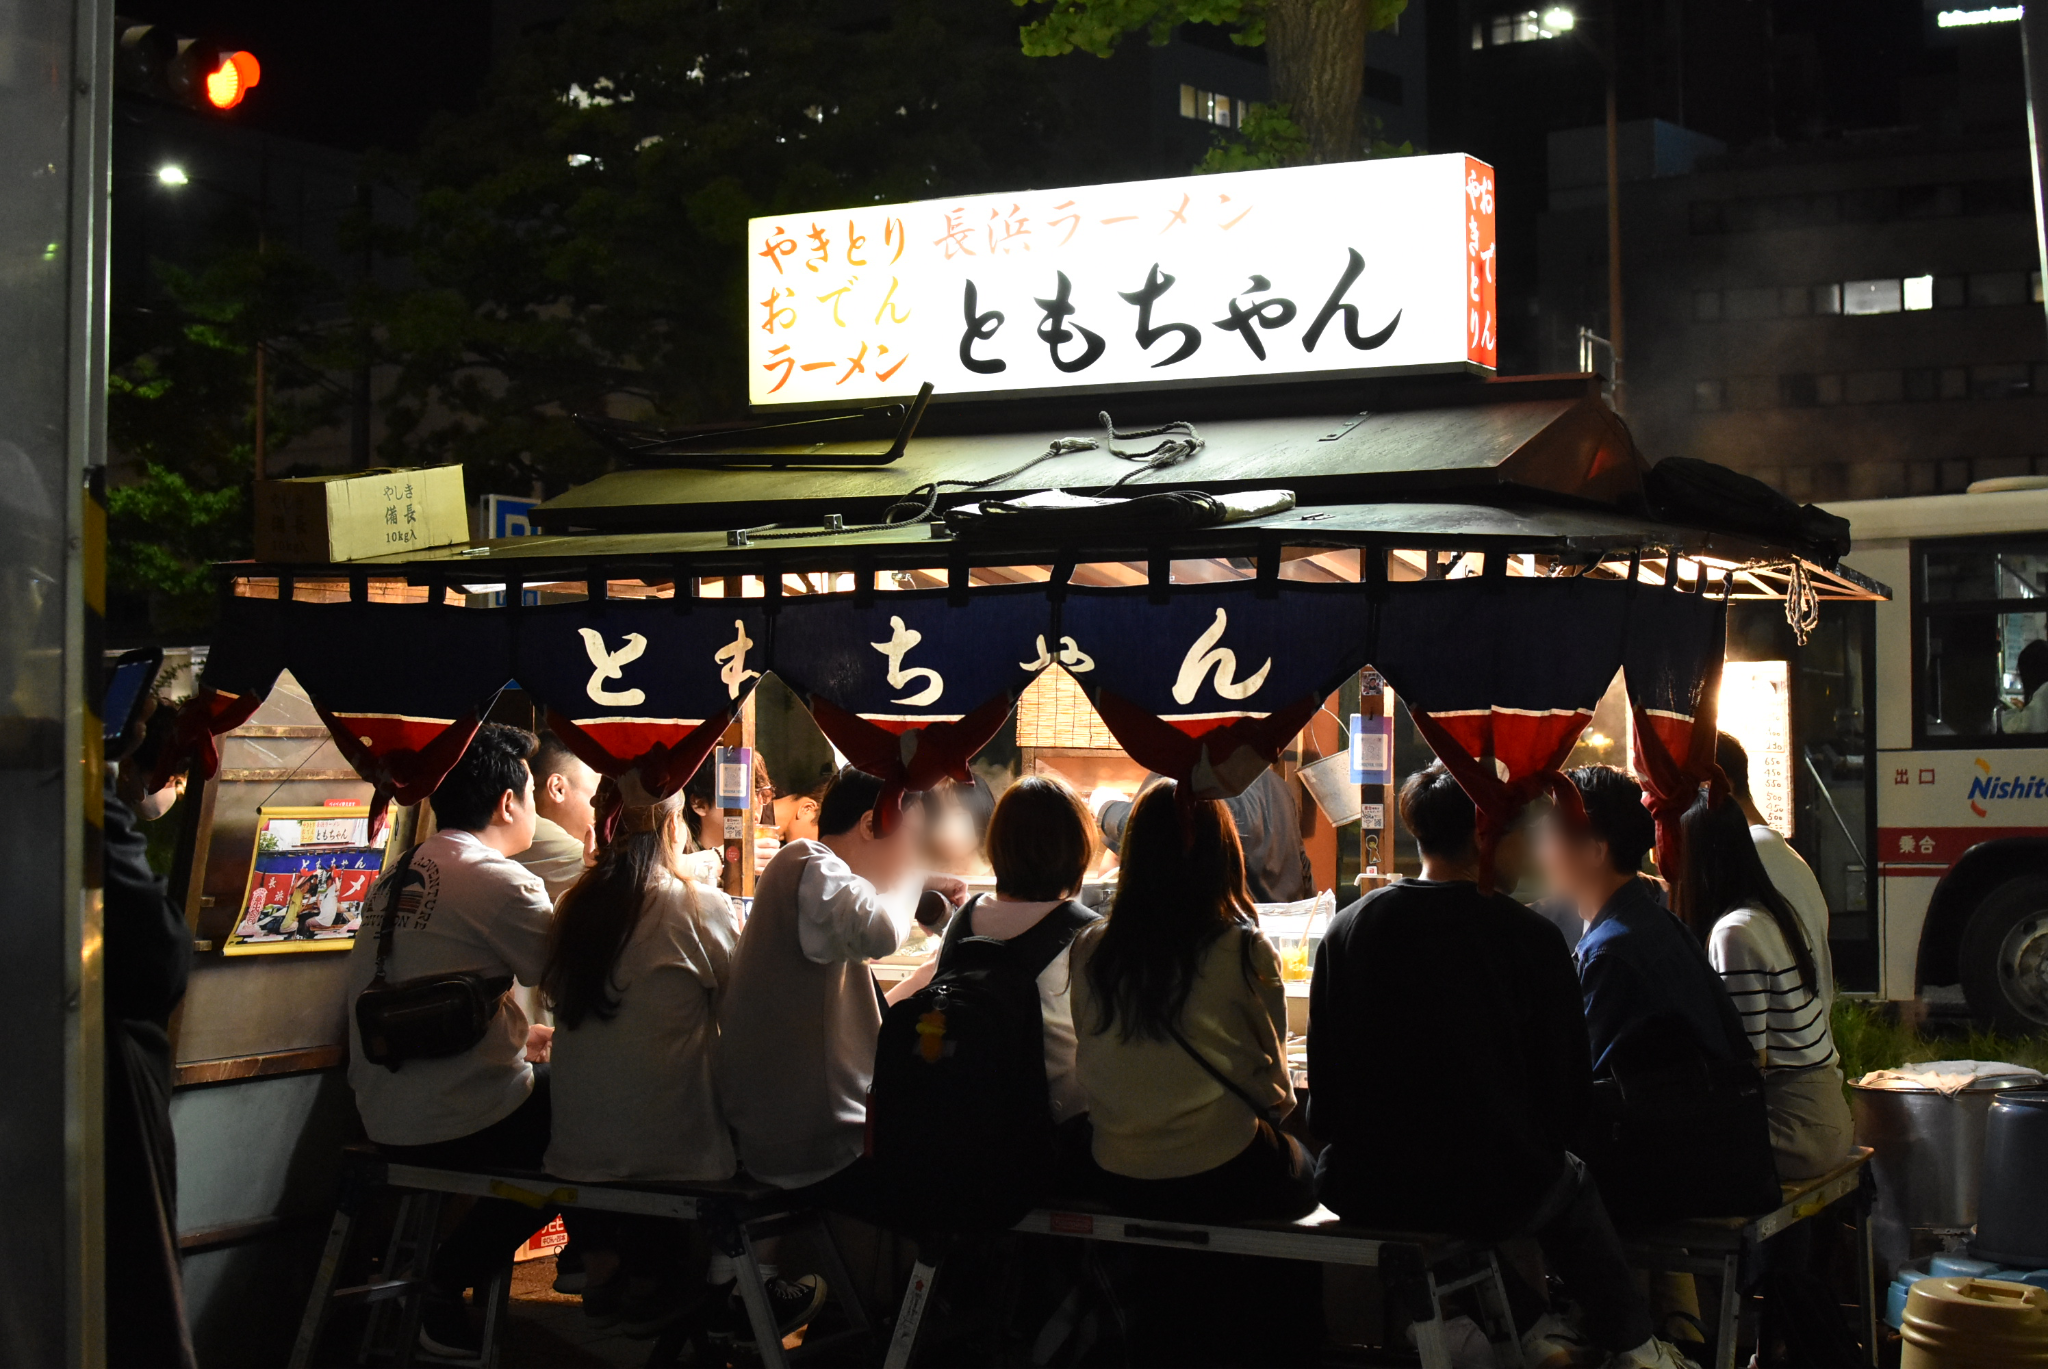 【初心者歓迎】福岡・天神の屋台街で食べ歩いて選んだおすすめ屋台3選